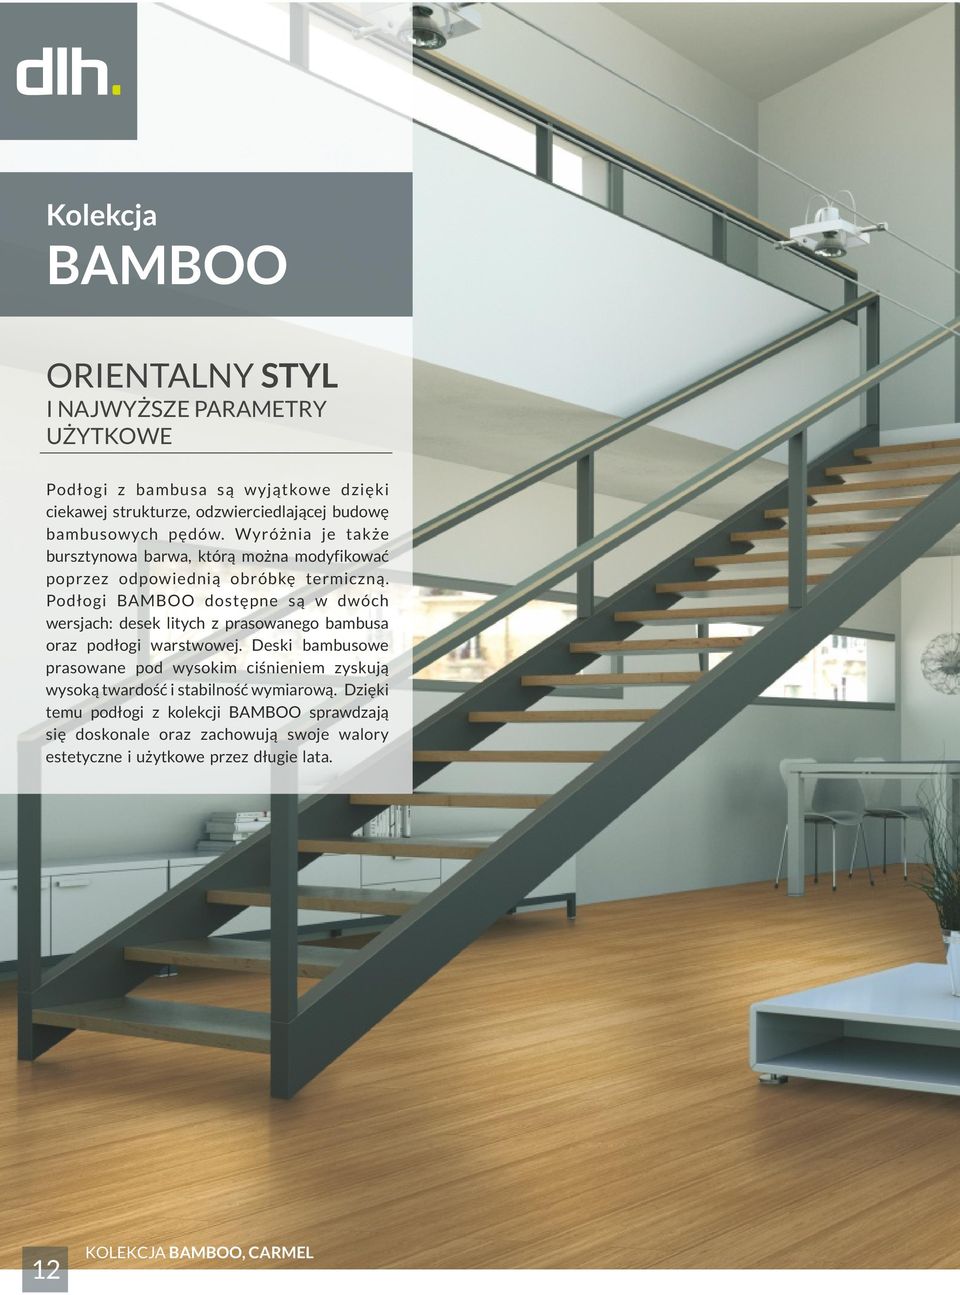 Podłogi BAMBOO dostępne są w dwóch wersjach: desek litych z prasowanego bambusa oraz podłogi warstwowej.